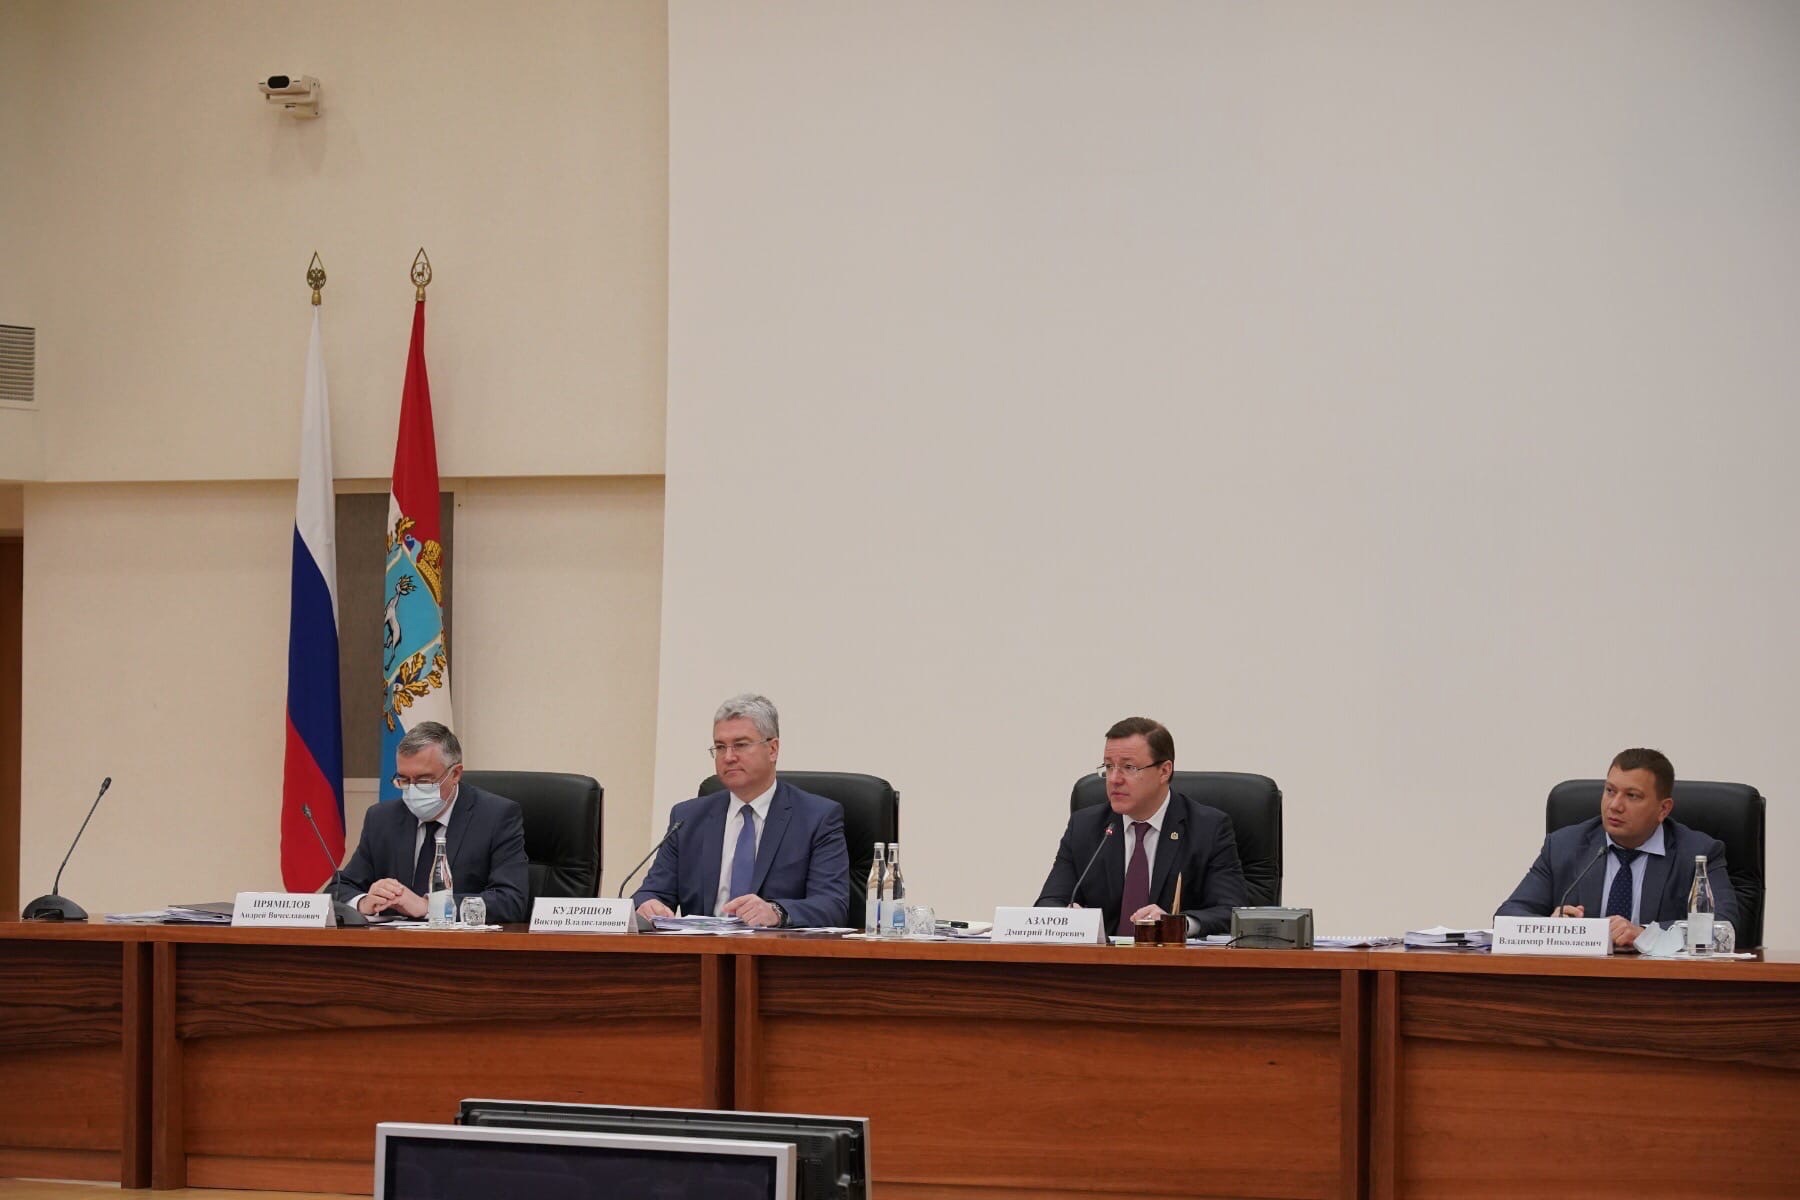 Дмитрий Азаров обсудил с главами муниципалитетов послание президента Федеральному собранию